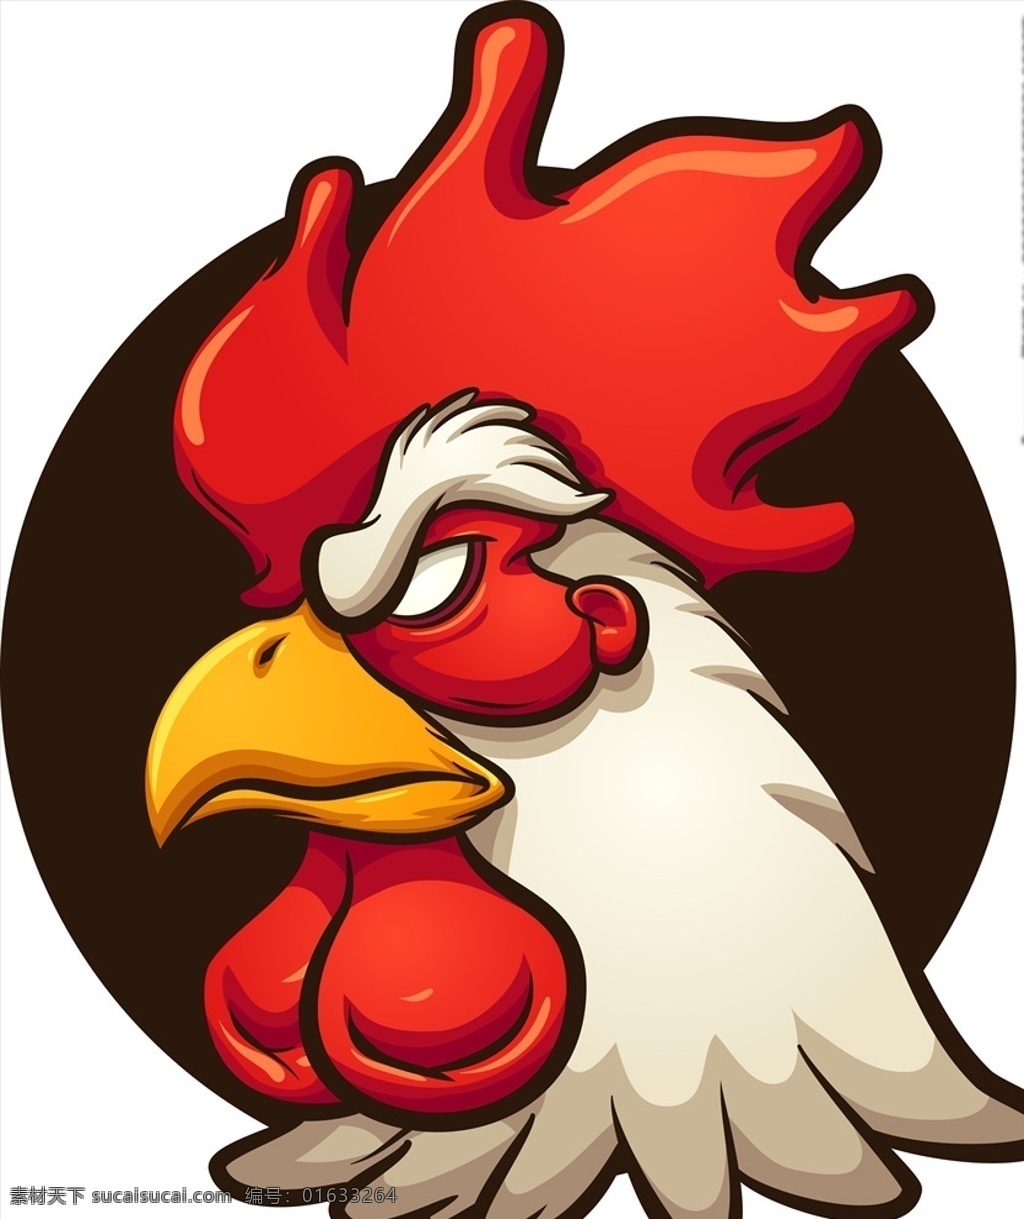 手绘 公鸡 头像 图案 印花 插画 插图 创意 鸡头 鸡冠 大公鸡 动漫动画